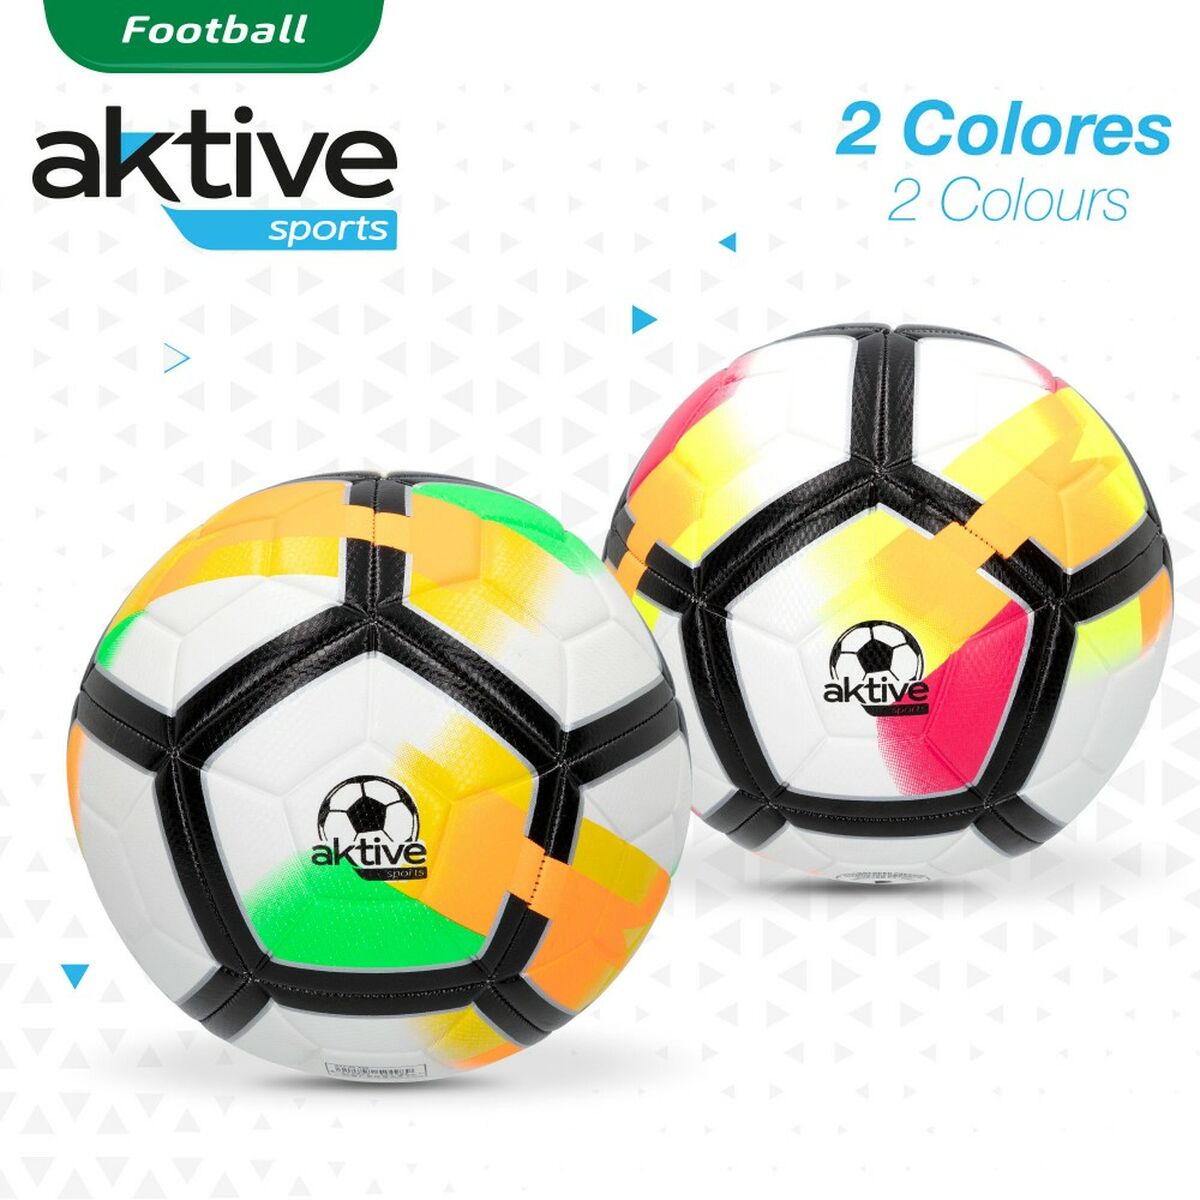 Pallone da Calcio Aktive 5 Ø 22 cm (12 Unità)